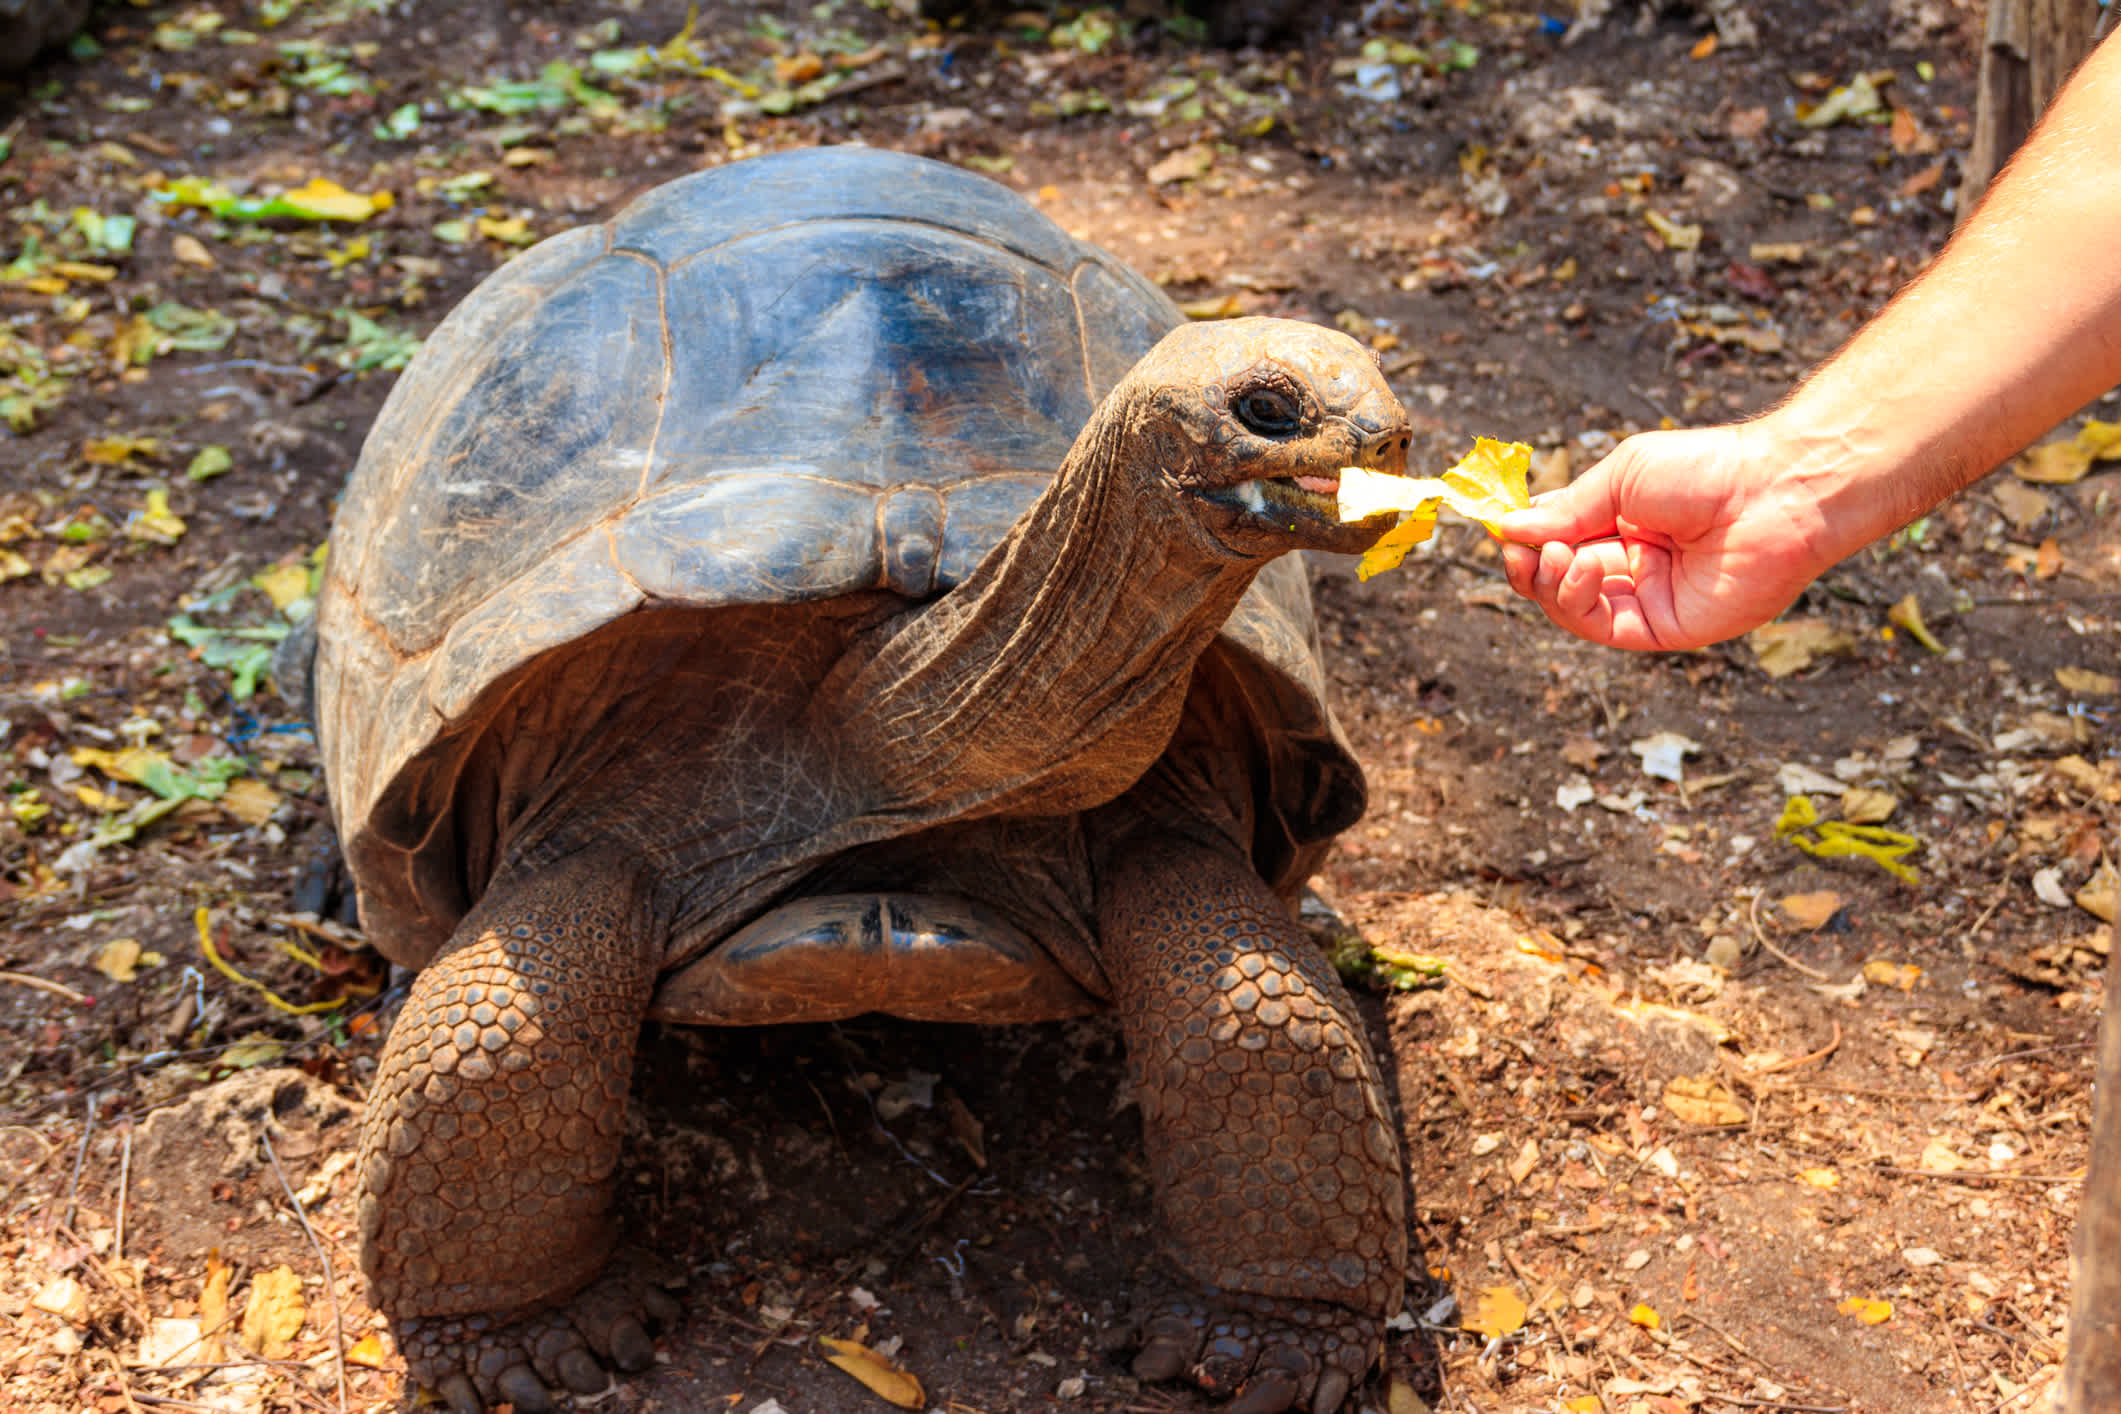 Personne en train de nourrir une tortue géante d'Aldabra sur l'île-prison, Zanzibar en Tanzanie

